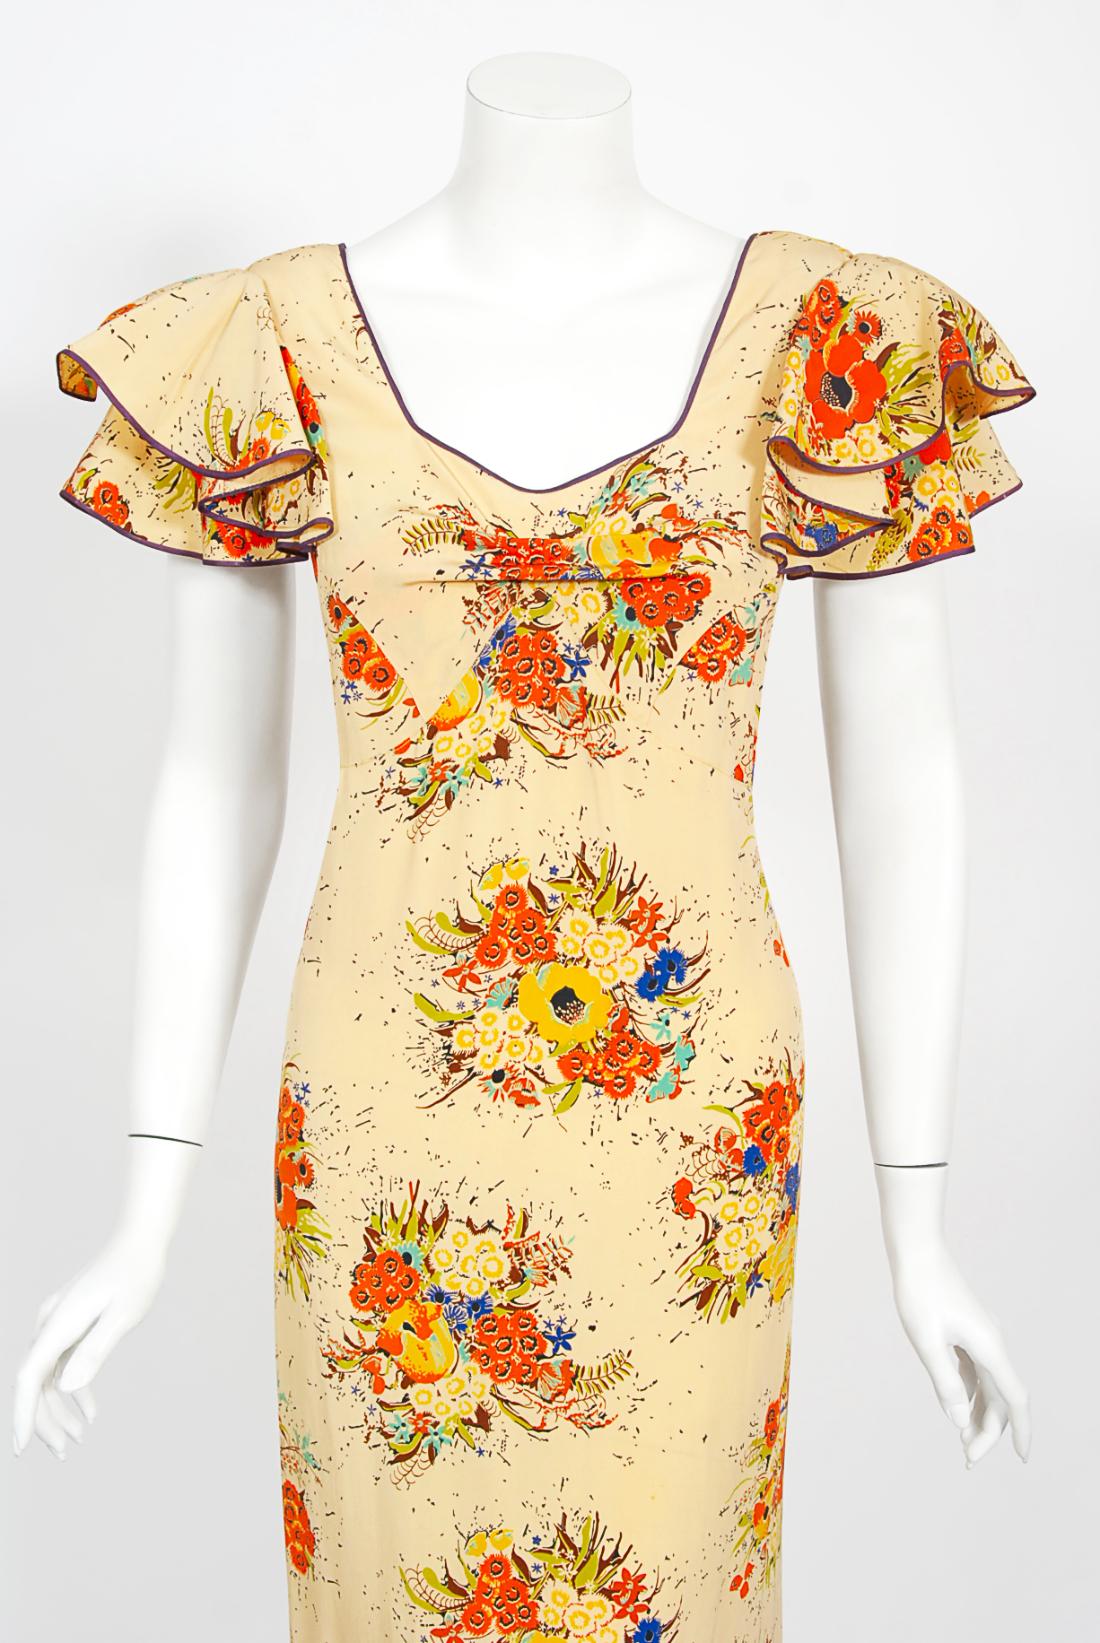 L'imprimé floral marigold vibrant utilisé sur cette robe longue en soie des années 1930 de la marque Ryder's of Philadelphia a une fraîcheur innocente que je trouve irrésistible. Le corsage présente un superbe décolleté sur le devant, avec des